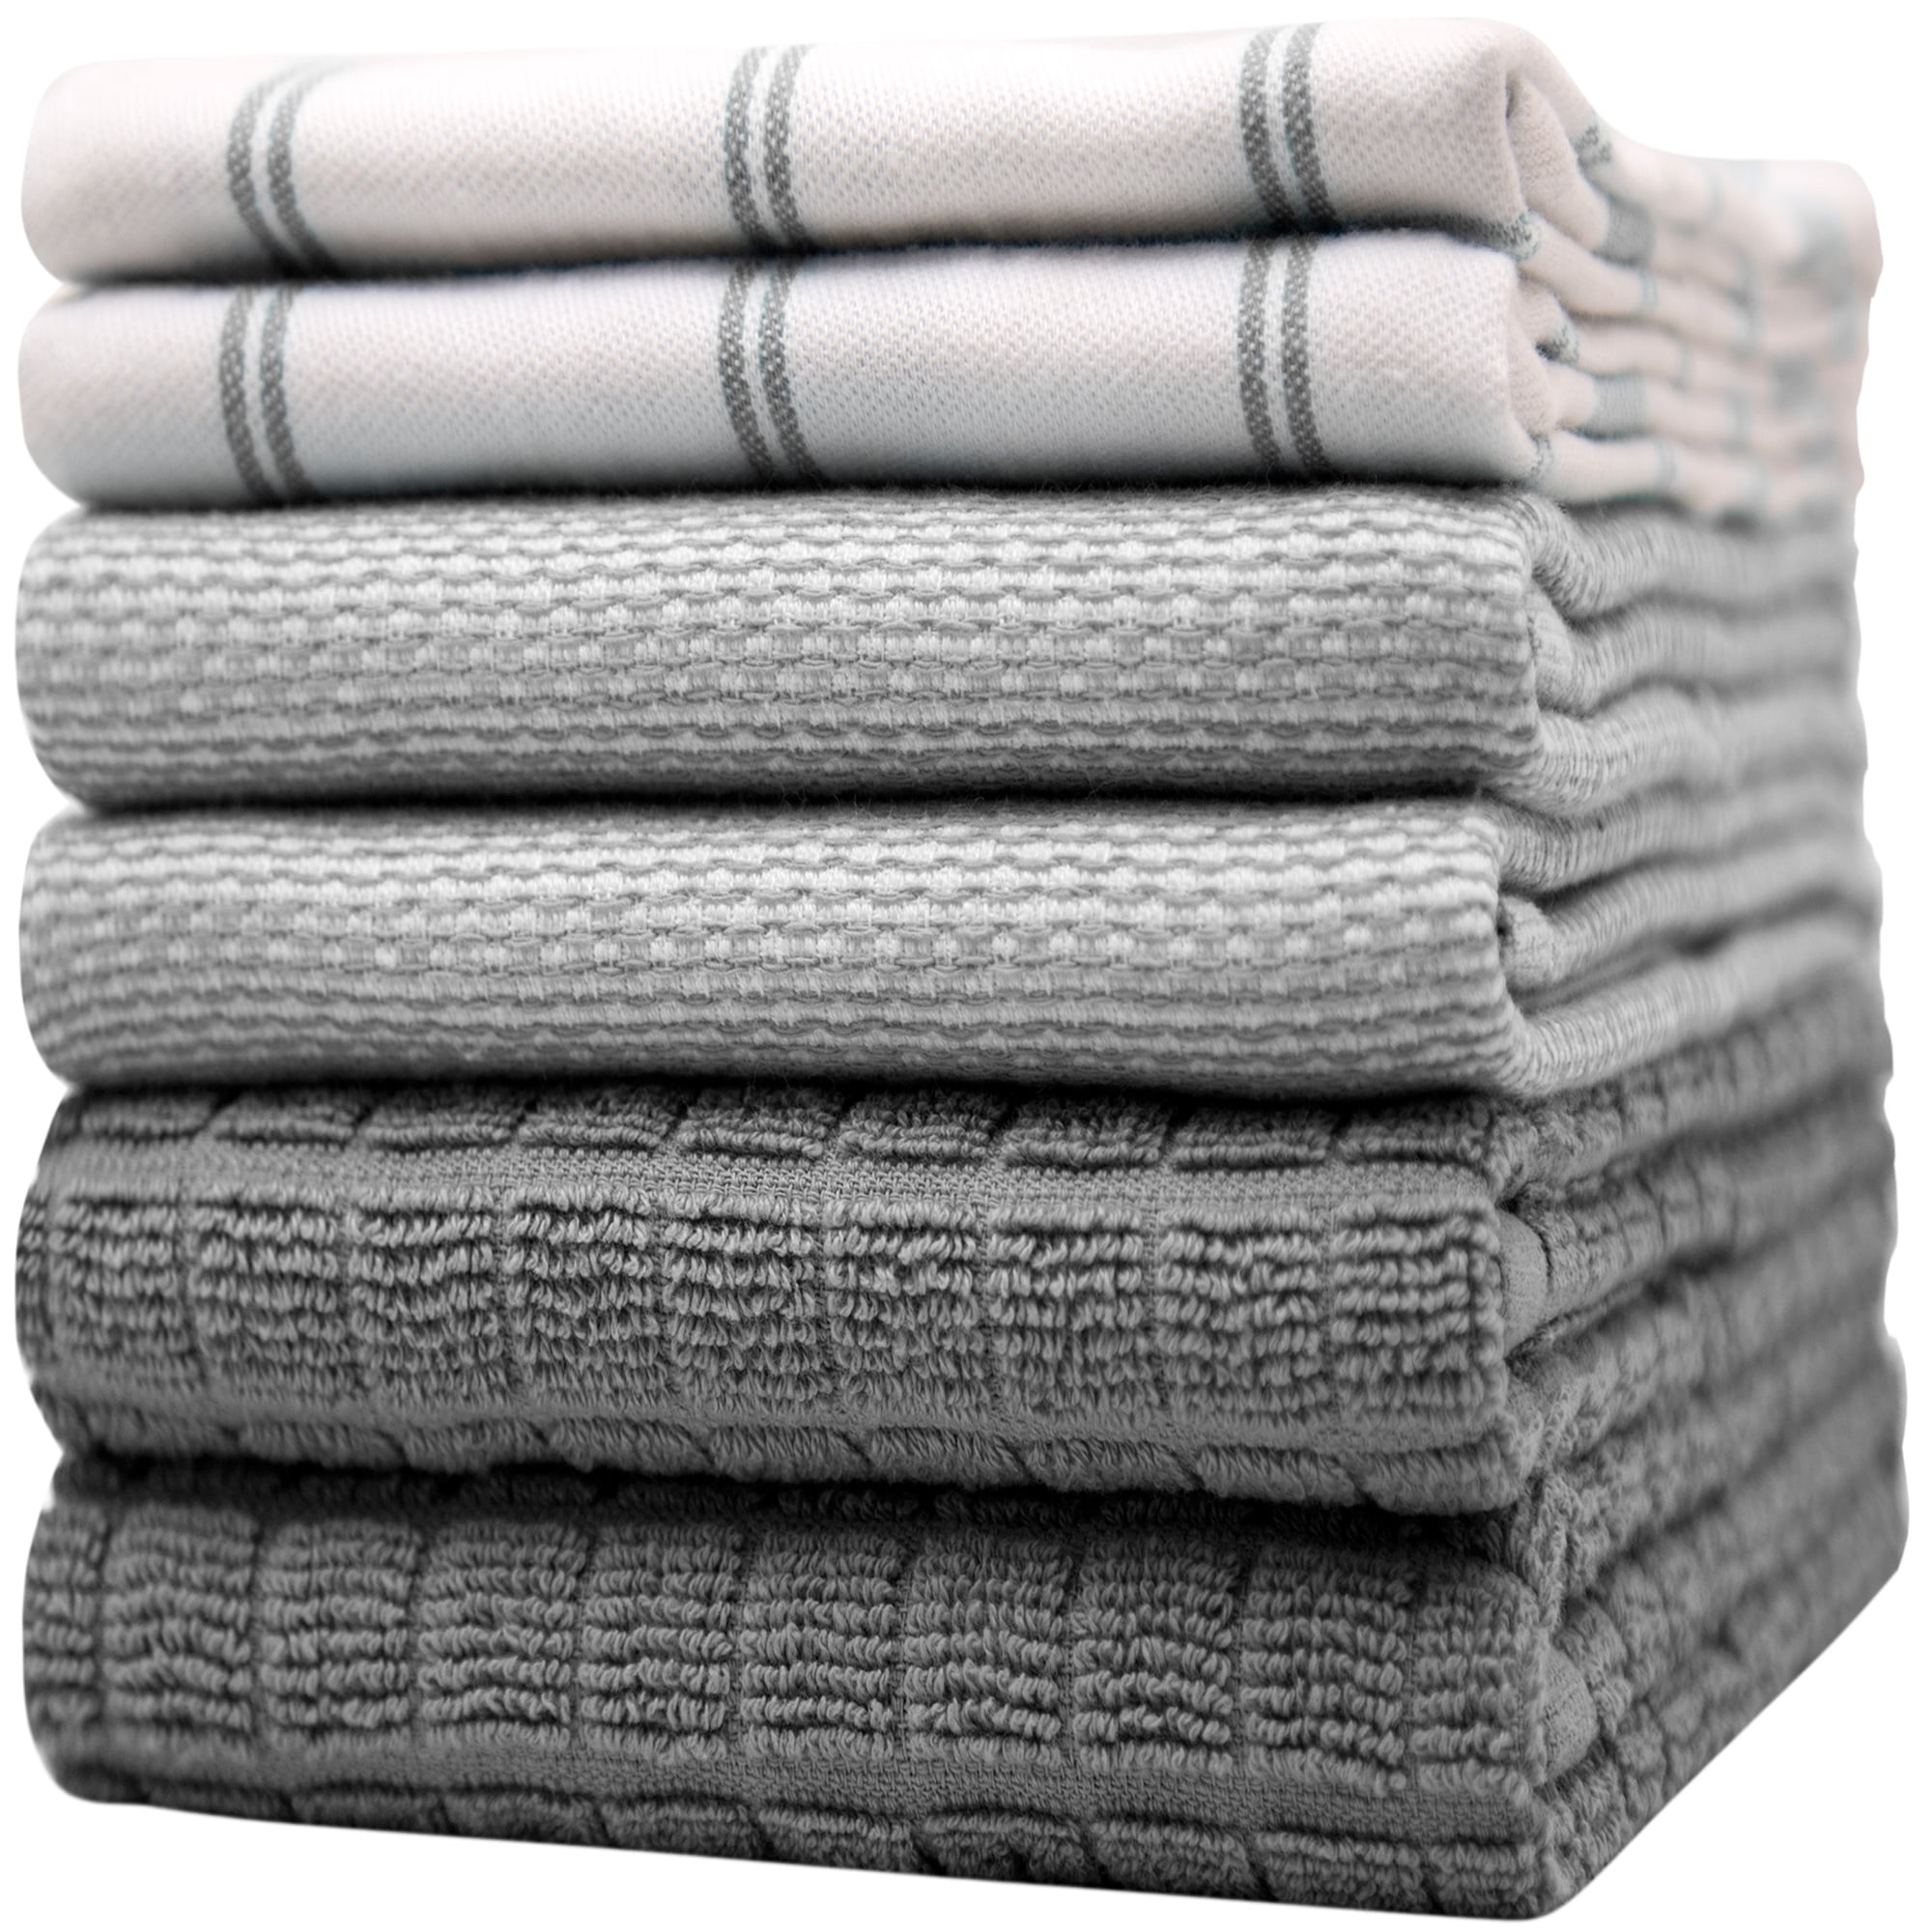 Bumble Towels Premium Kitchen Towels (20”x 28”, 6pc Pack) Large